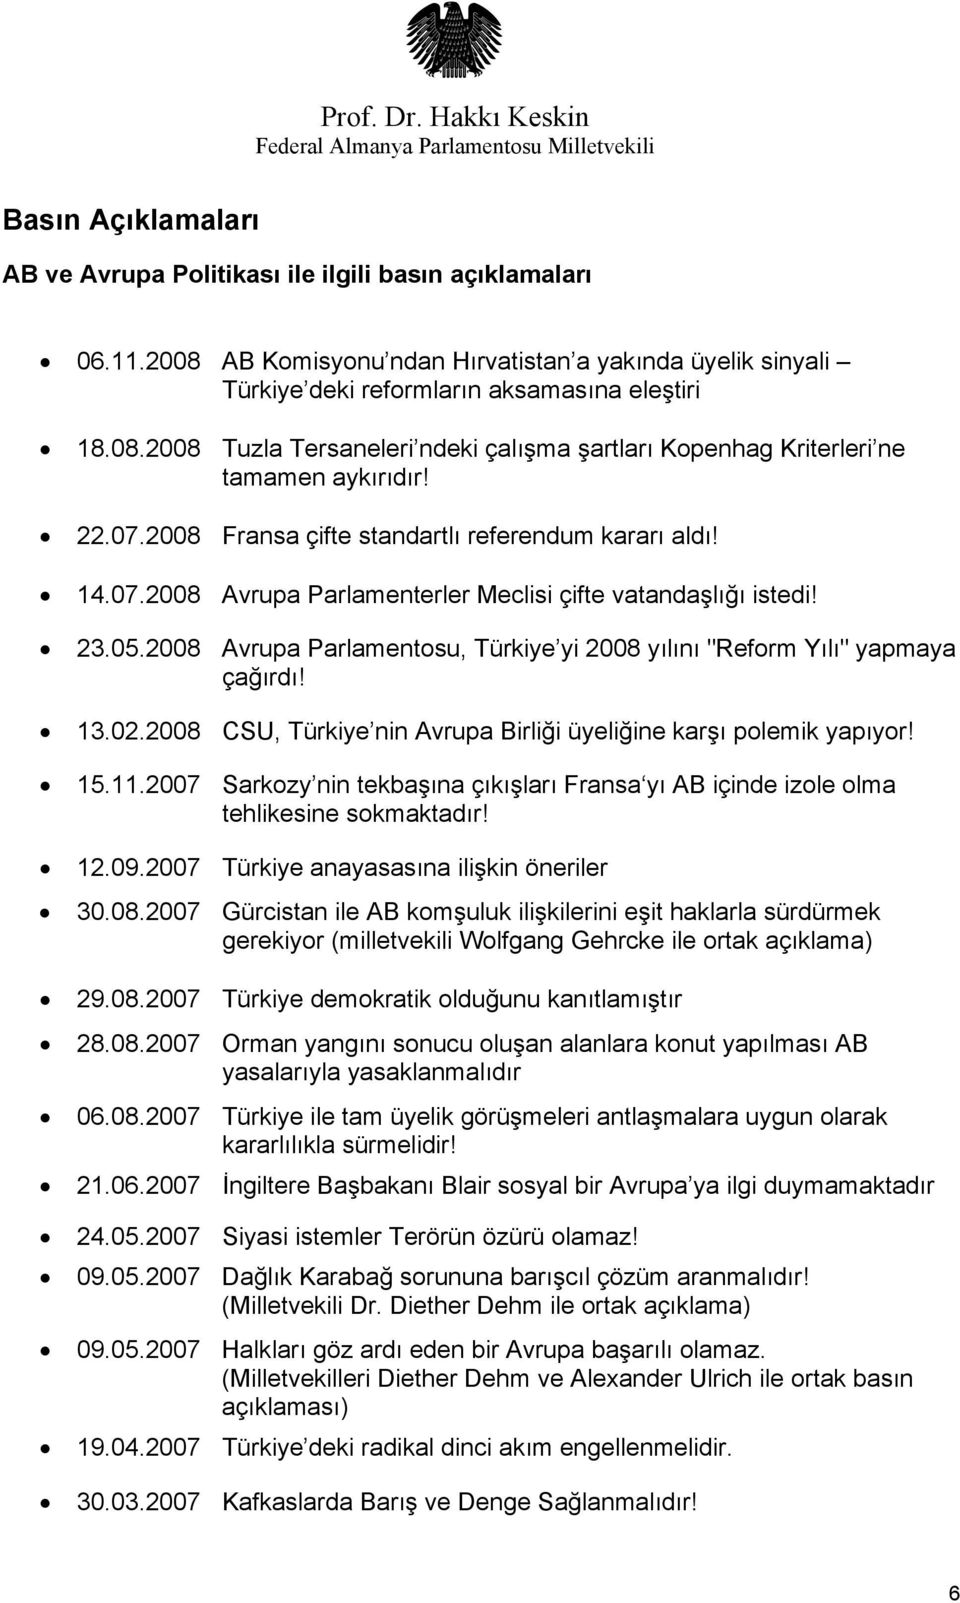 2008 Avrupa Parlamentosu, Türkiye yi 2008 yılını "Reform Yılı" yapmaya çağırdı! 13.02.2008 CSU, Türkiye nin Avrupa Birliği üyeliğine karşı polemik yapıyor! 15.11.